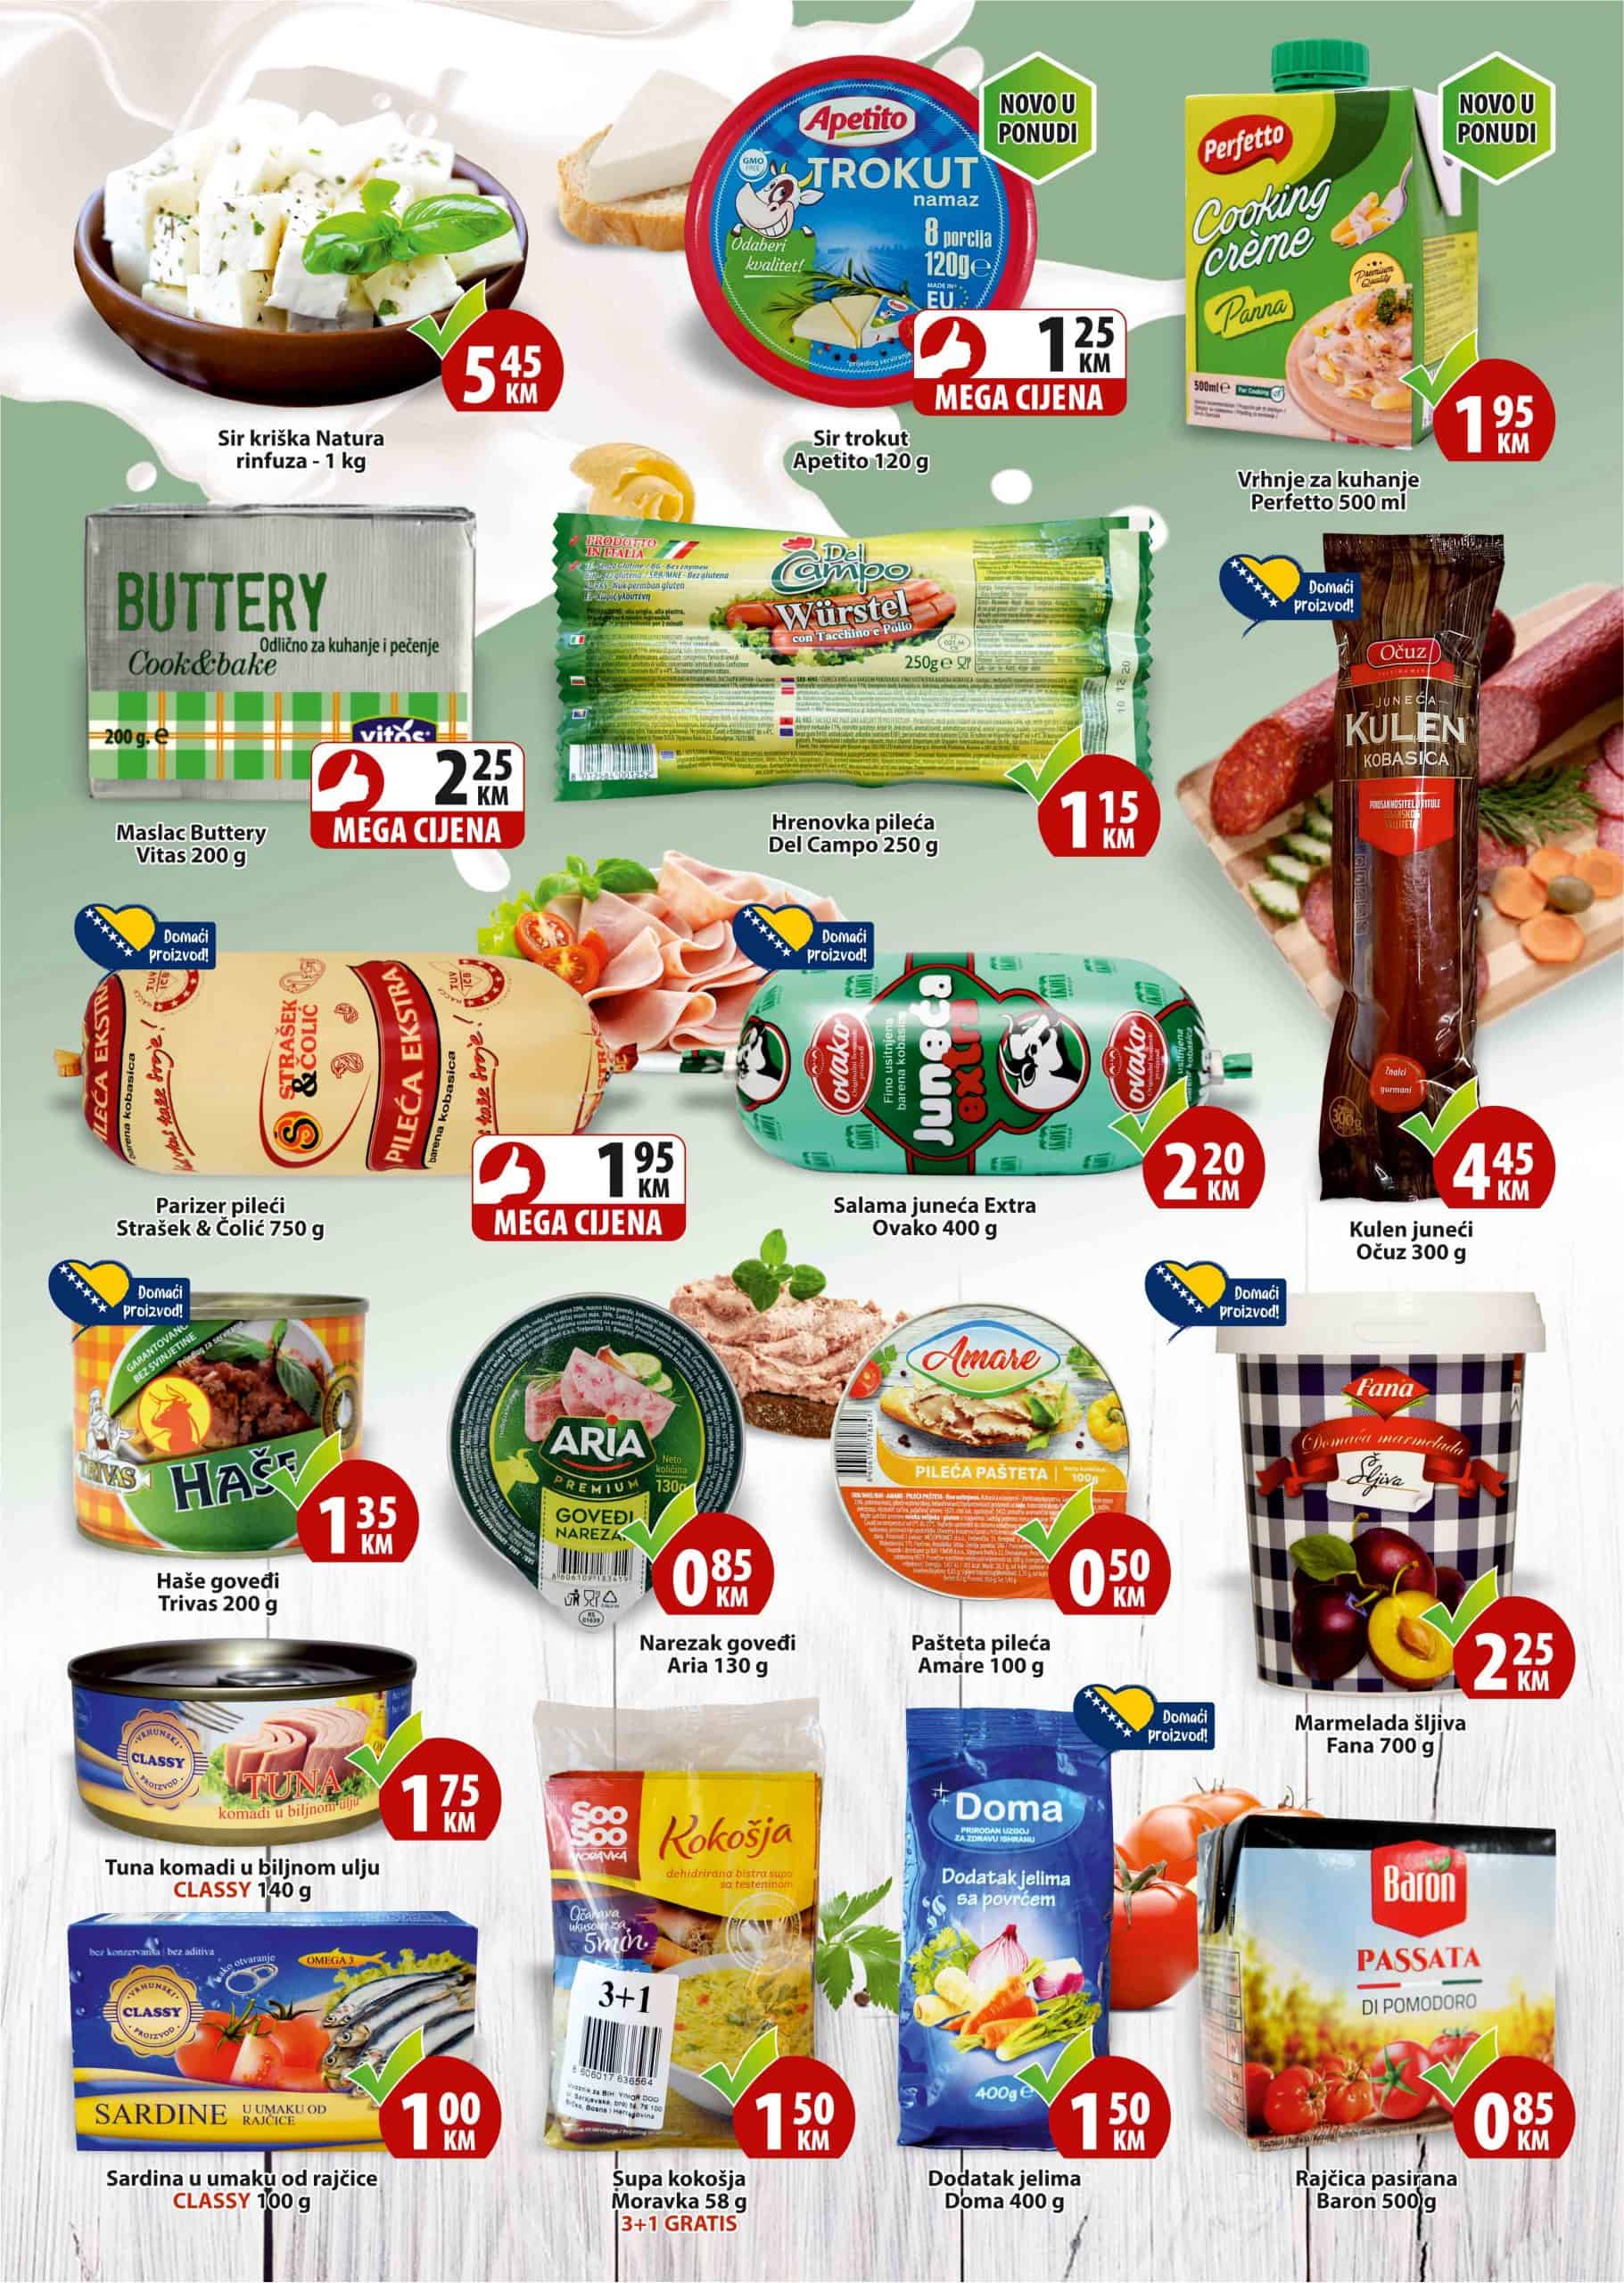 Mega Diskont katalog nam donosi odlične akcijske cijene za Ramazan. Pogledajte: akcijske cijene oraha, akcijske cijene hurmi. Mesne preradjevine i mljecni proizvodi su takodjer na akciji. Veliki izbor prehrambenih namirnica po super cijenama!